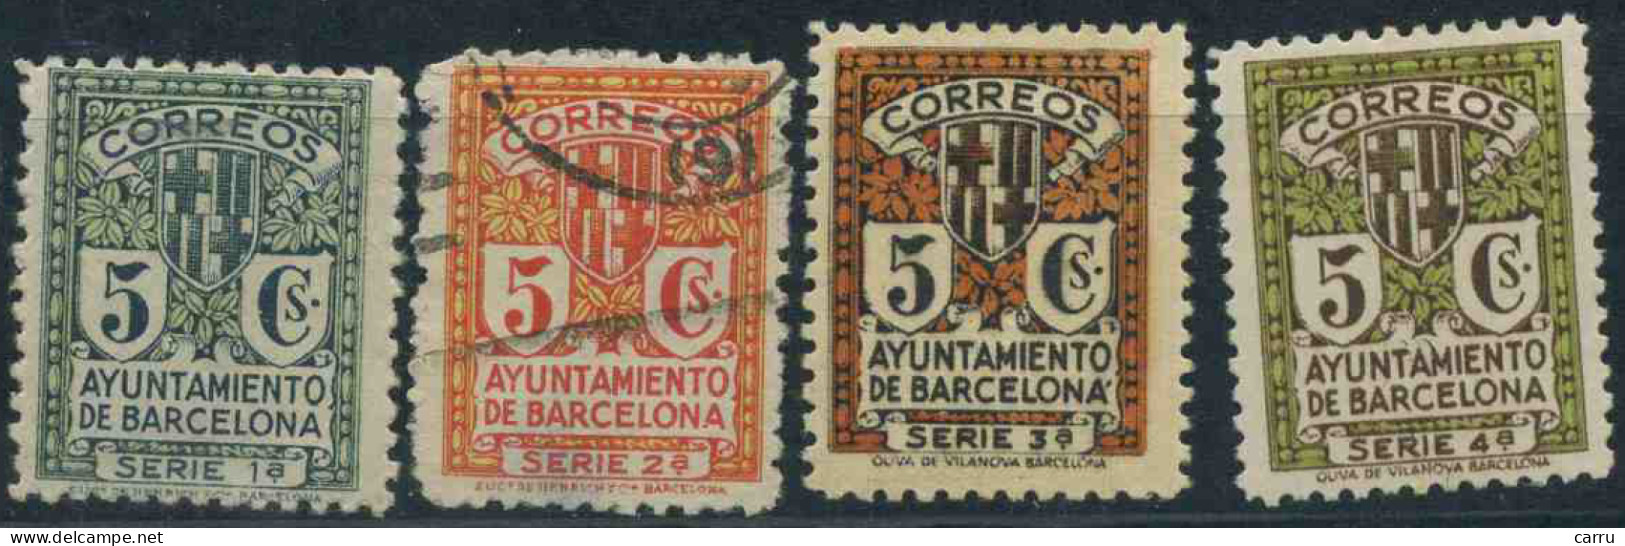 España - Barcelona - 1932-1935 - Barcellona